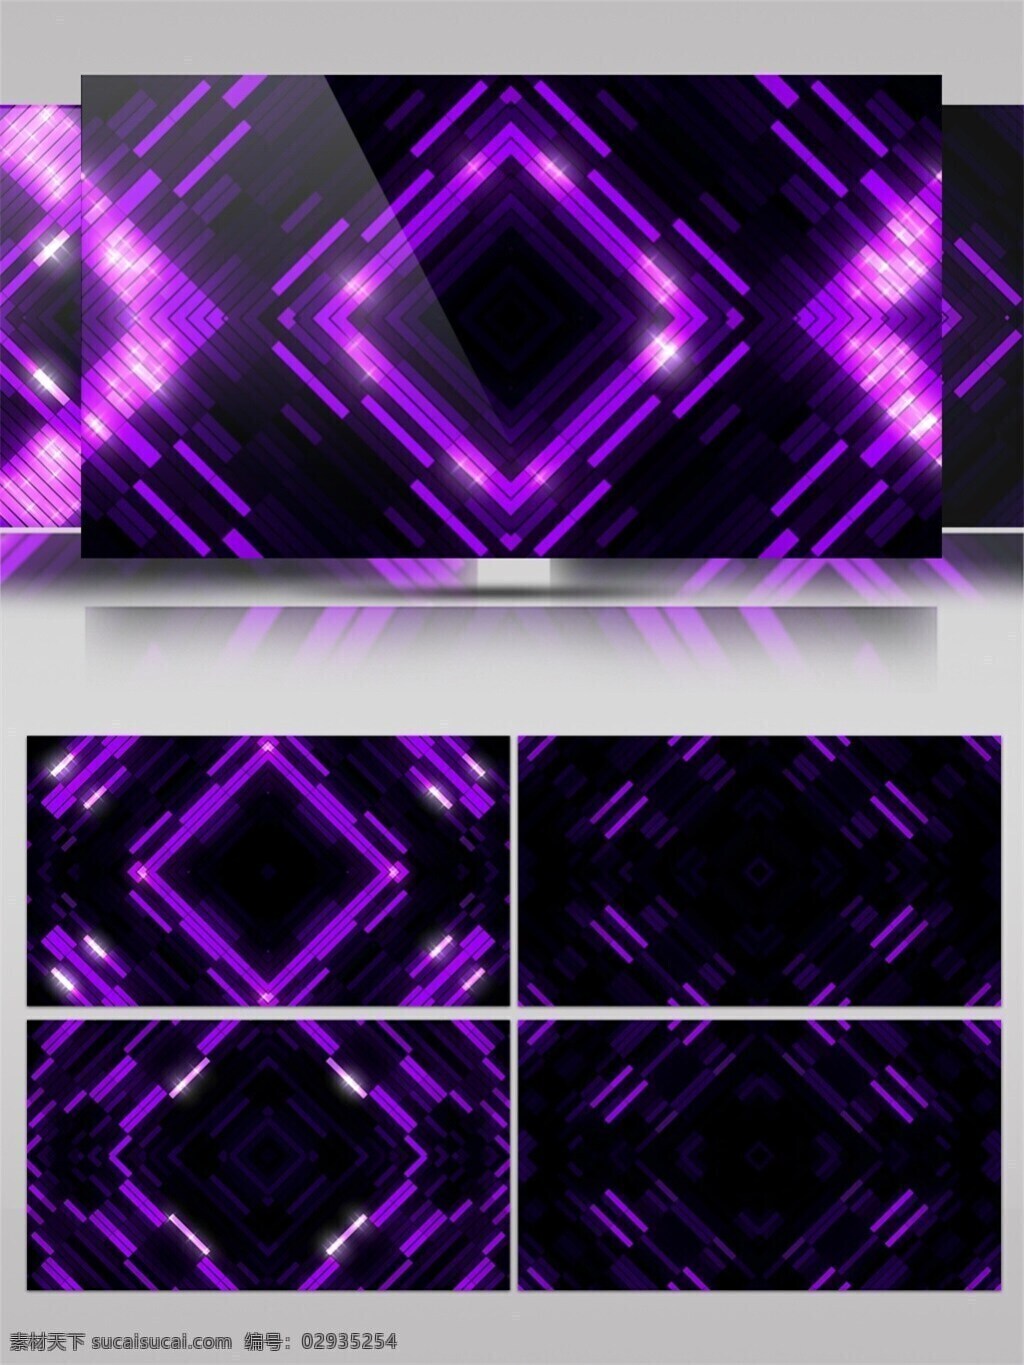 紫色 光束 方块 高清 视频 激光 节目灯光 视觉享受 唯美背景素材